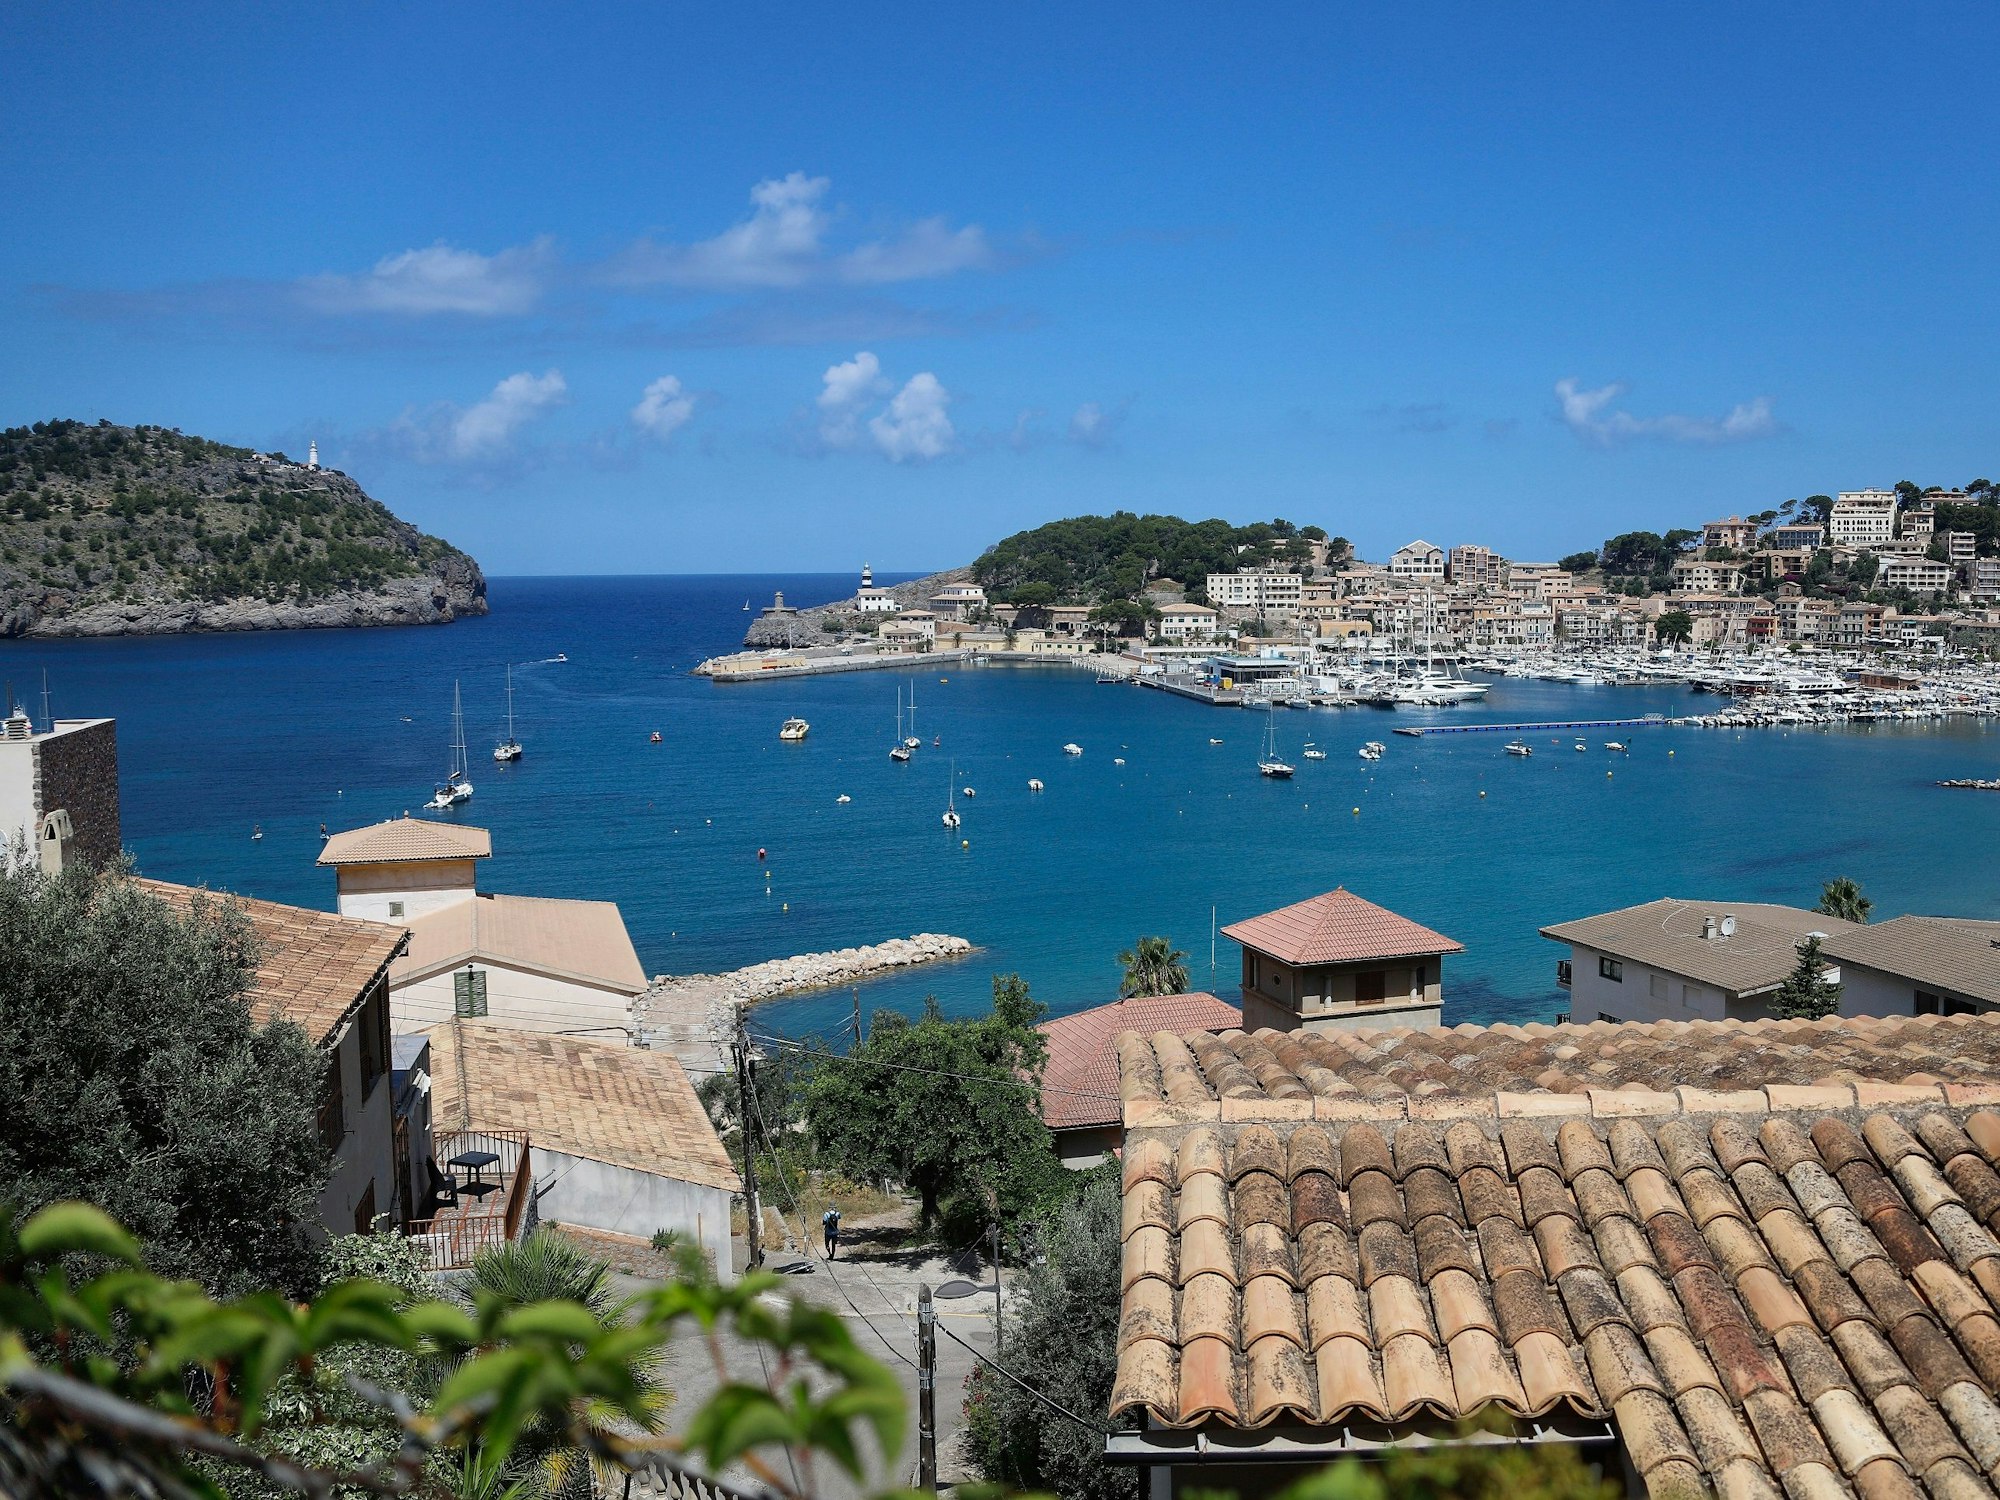 Blick auf das Dorf, einer Gemeinde mit vielen deutschen Einwohnern oder Besitzern von Zweitwohnsitzen auf Mallorca.